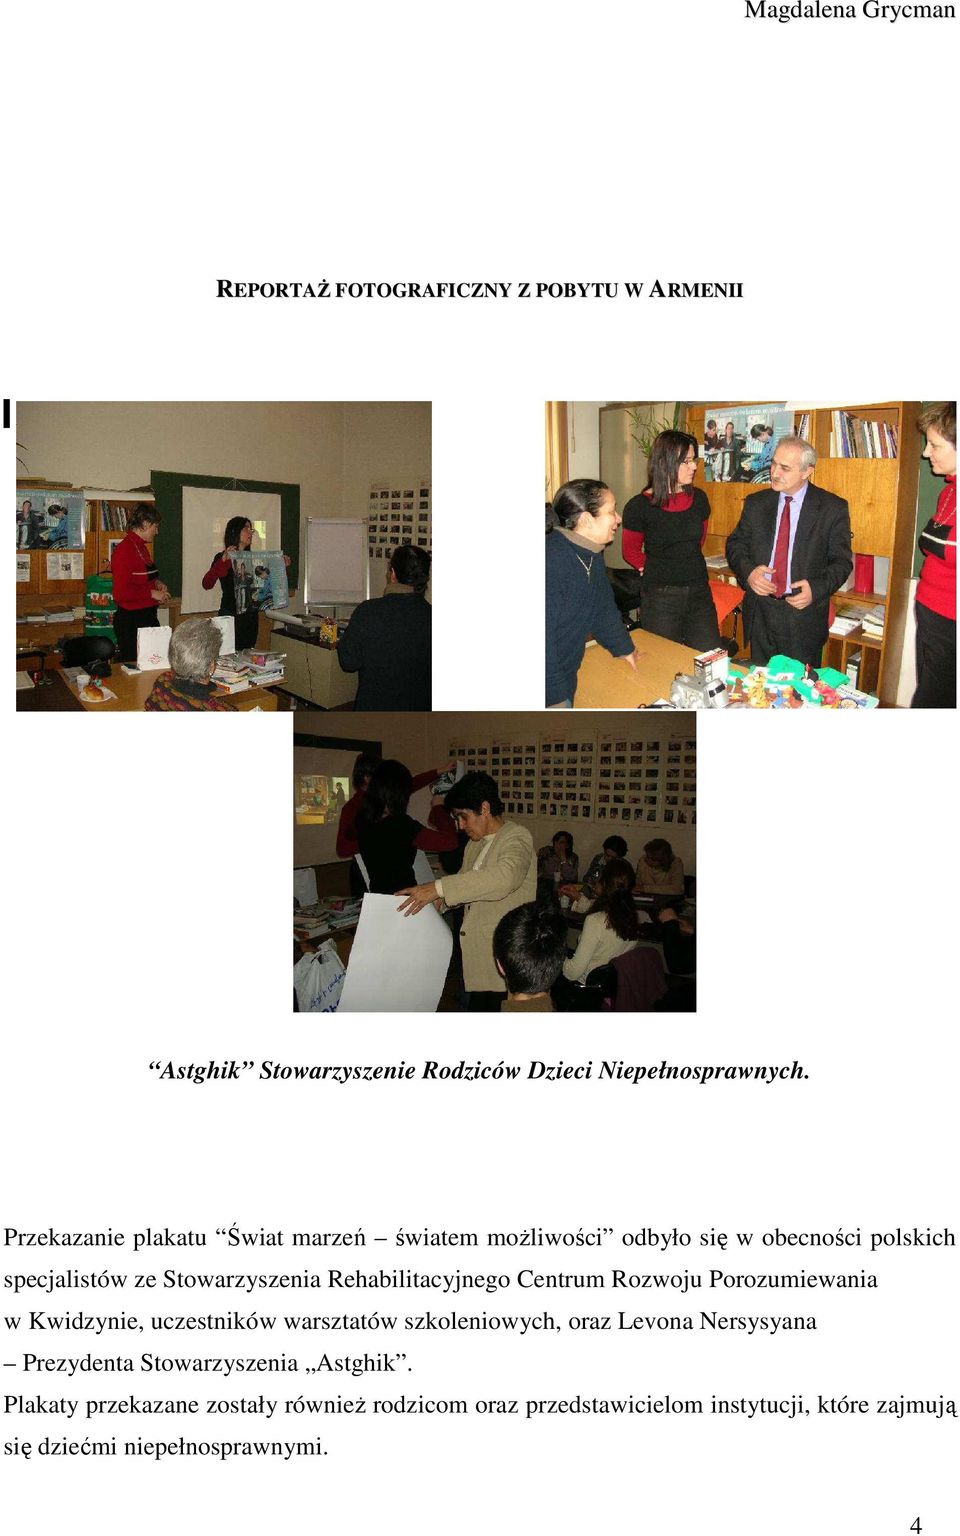 Rehabilitacyjnego Centrum Rozwoju Porozumiewania w Kwidzynie, uczestników warsztatów szkoleniowych, oraz Levona Nersysyana